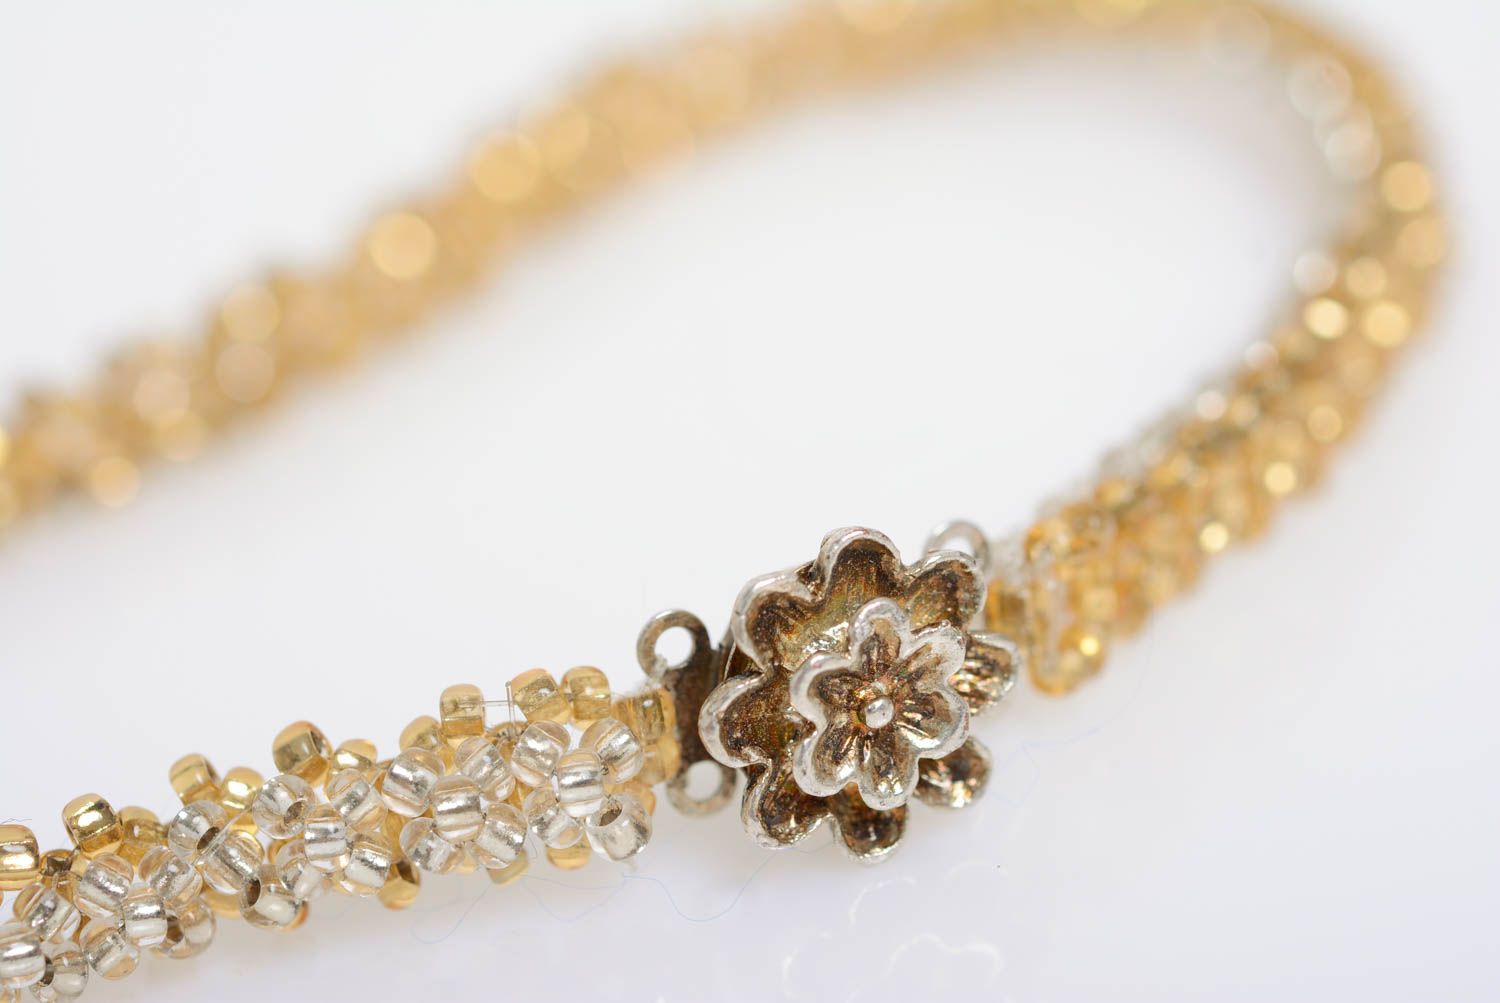 Ожерелье из бисера золотистого цвета нежное красивое ручной работы плетеное фото 5